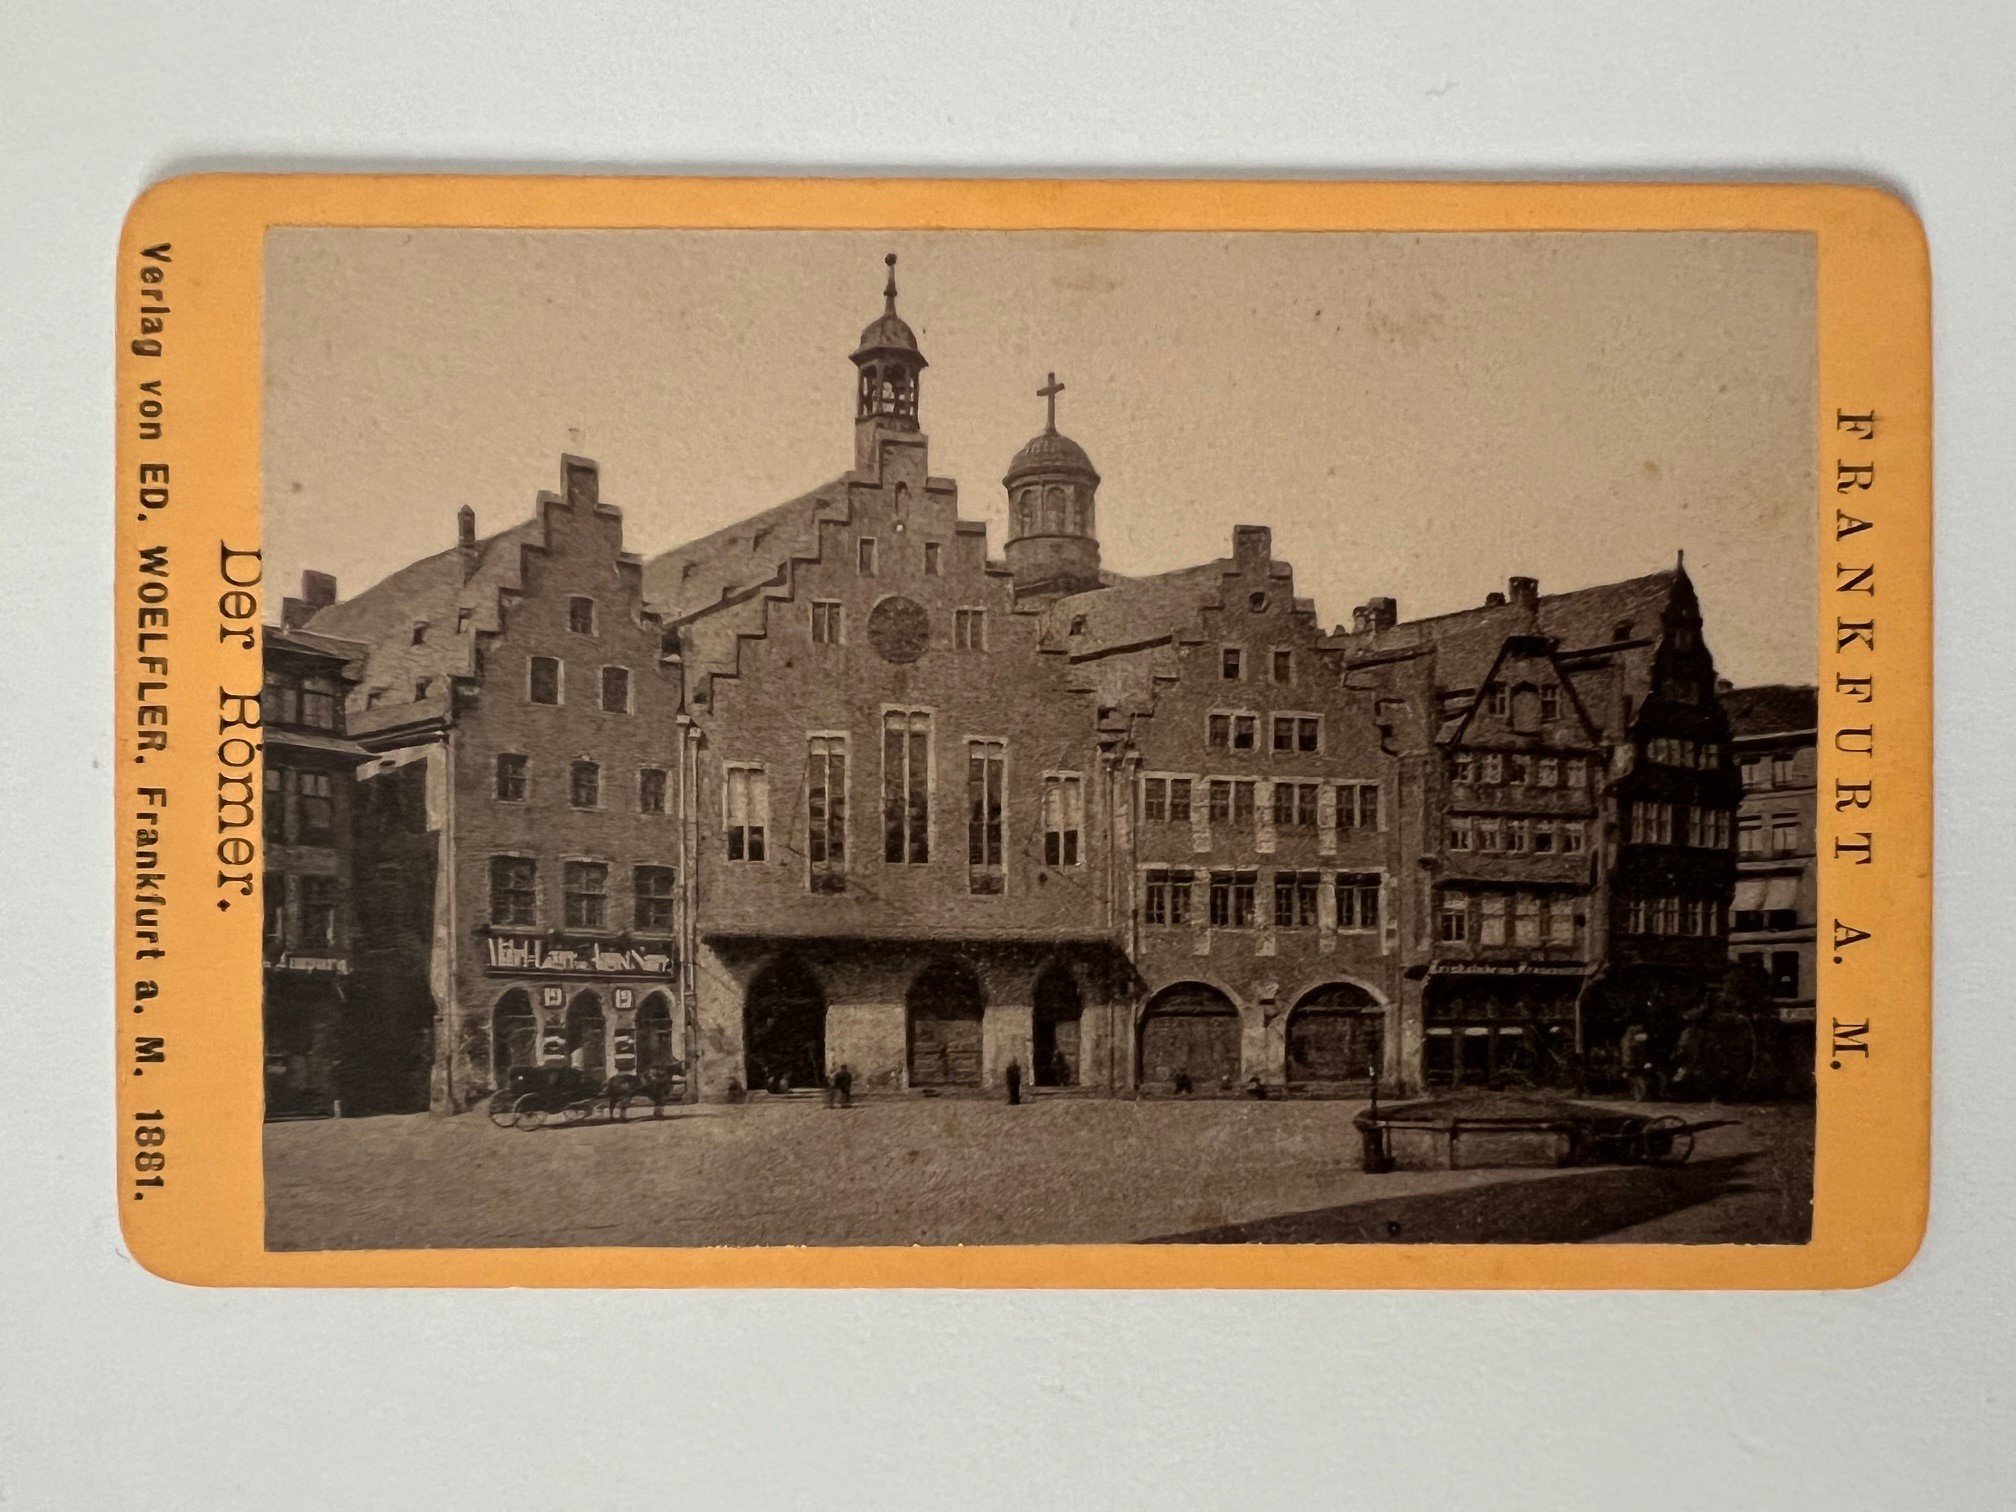 CdV, Unbekannter Fotograf, Frankfurt, Der Römer, ca. 1881. (Taunus-Rhein-Main - Regionalgeschichtliche Sammlung Dr. Stefan Naas CC BY-NC-SA)